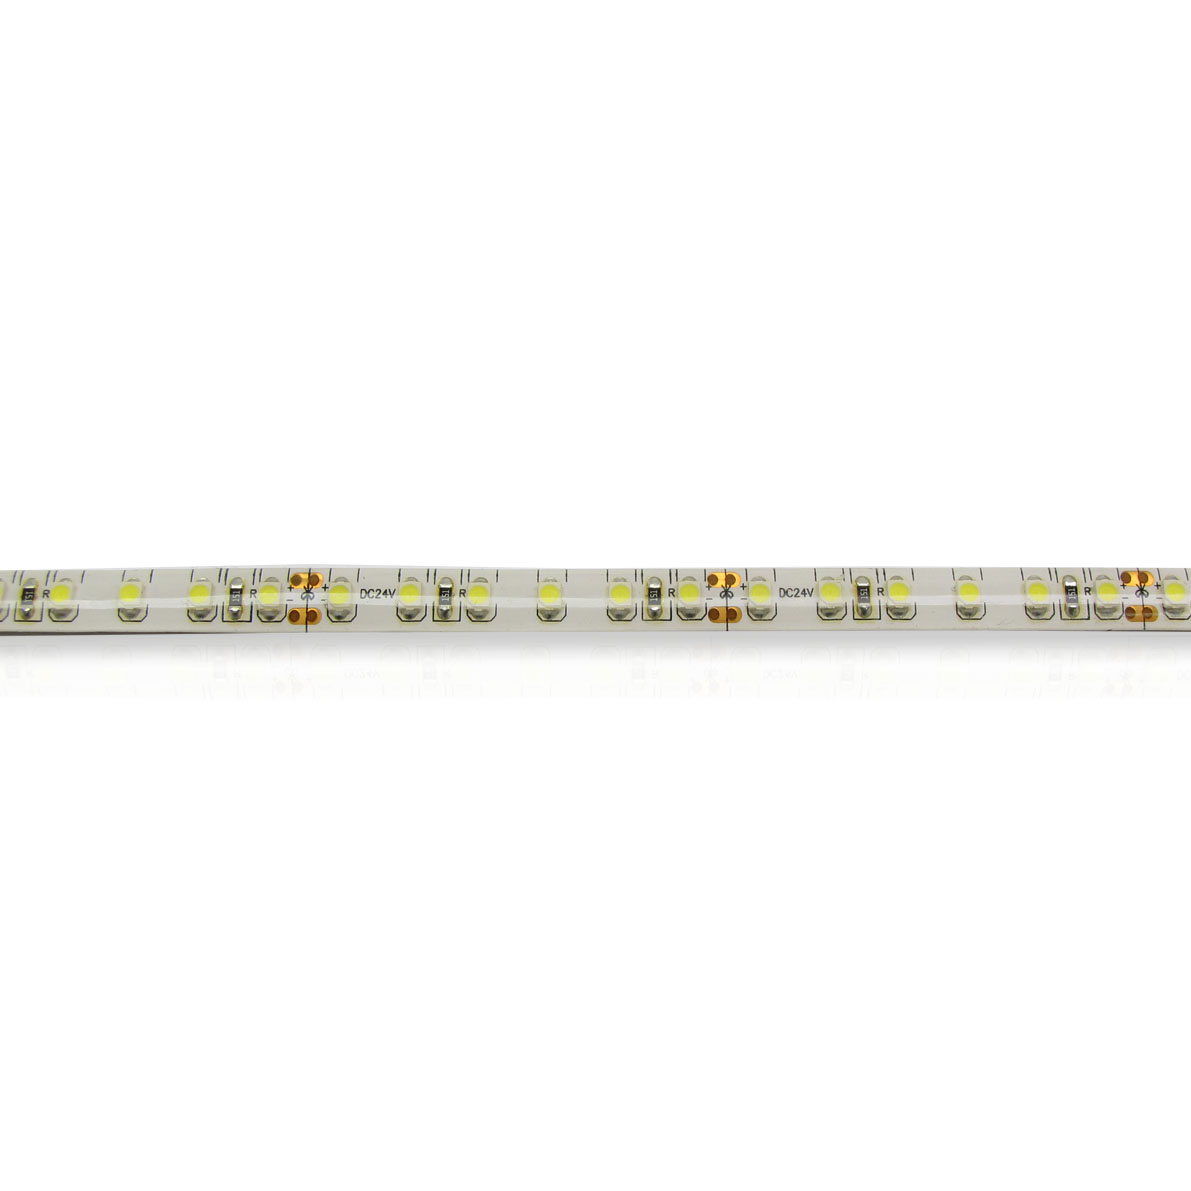 светодиодная лента standart pro class, 3528, 120 led/m, day white, 24v, ip65, артикул 54282